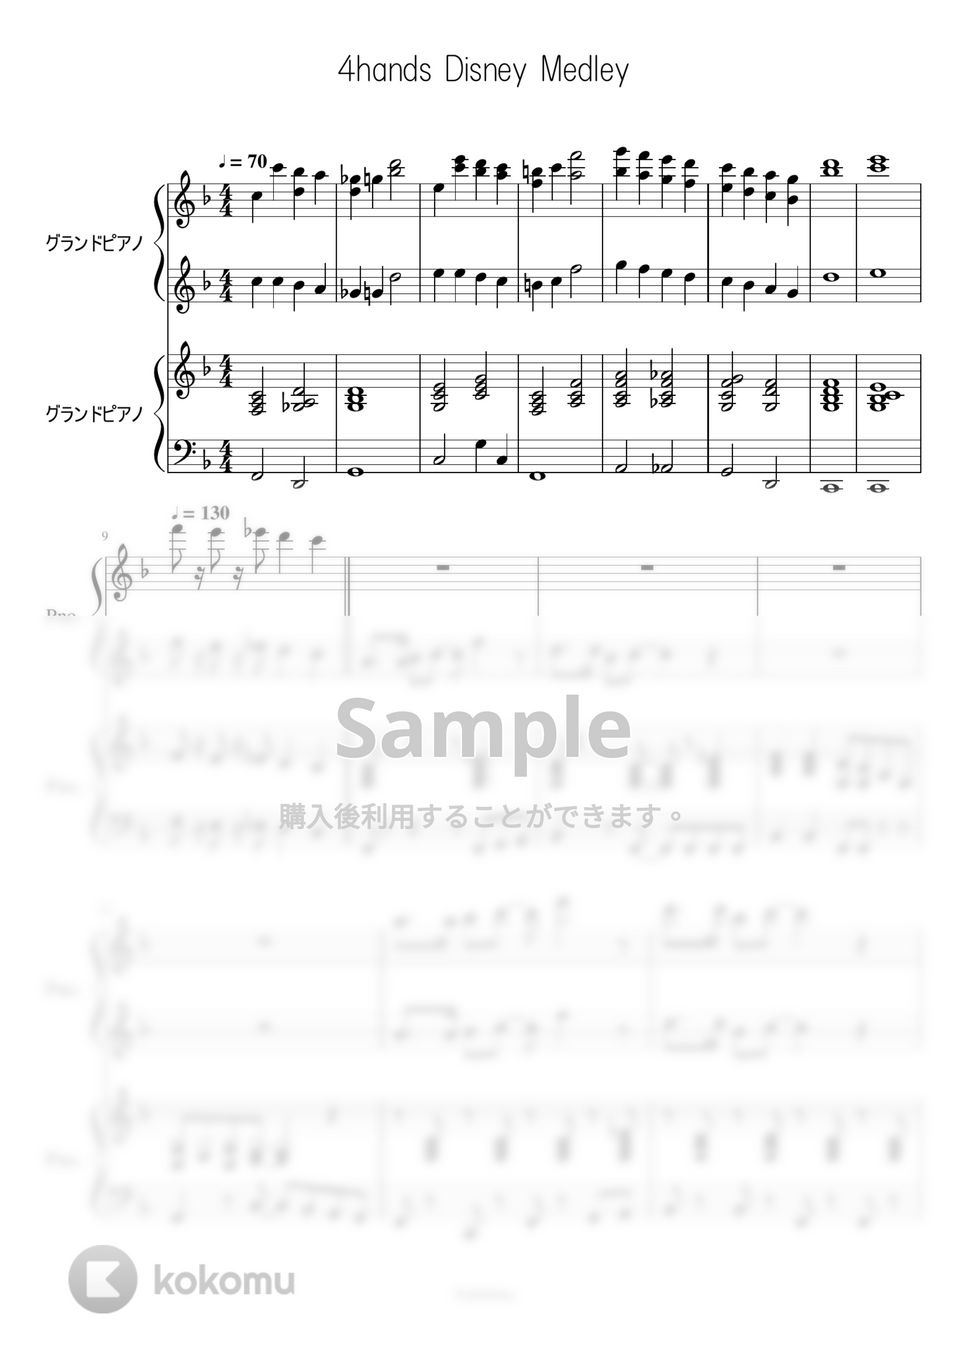 東京ディズニーランド - ディズニー連弾メドレー 4hands Disney Medley (連弾) by Trohishima